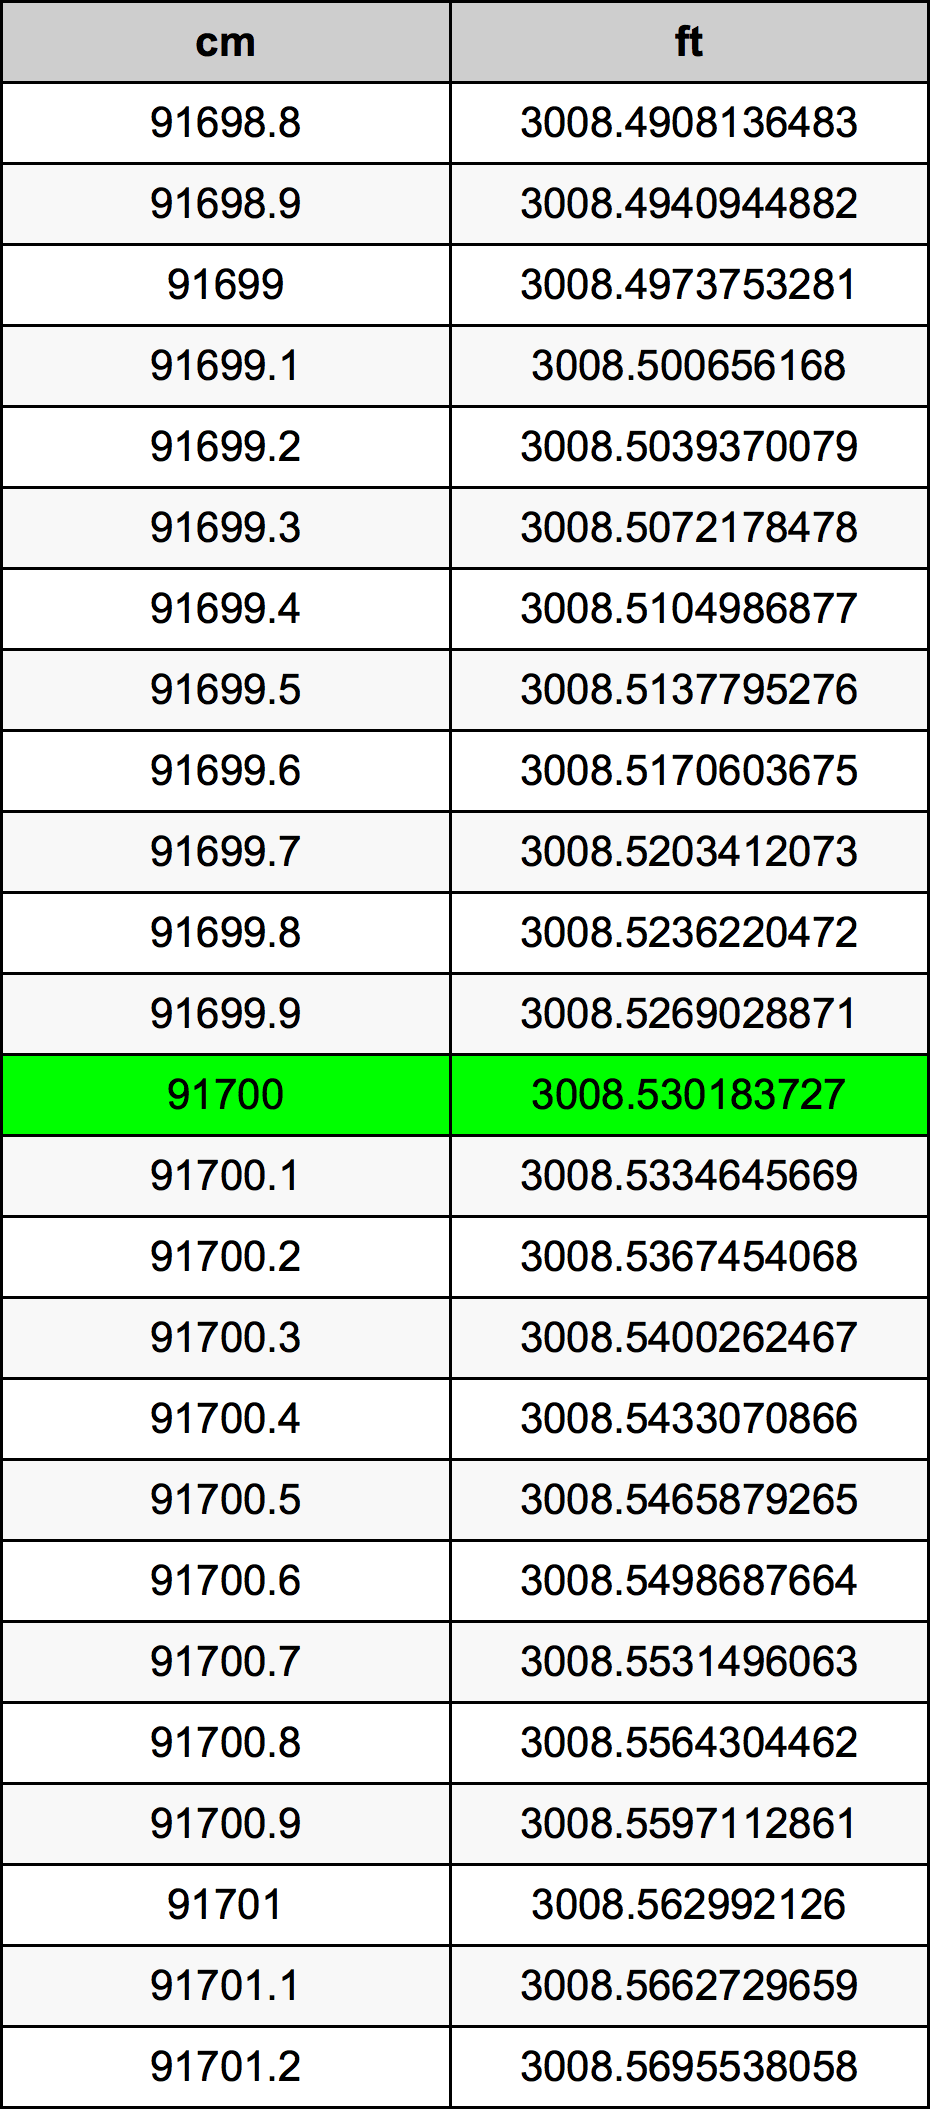 91700 ċentimetru konverżjoni tabella